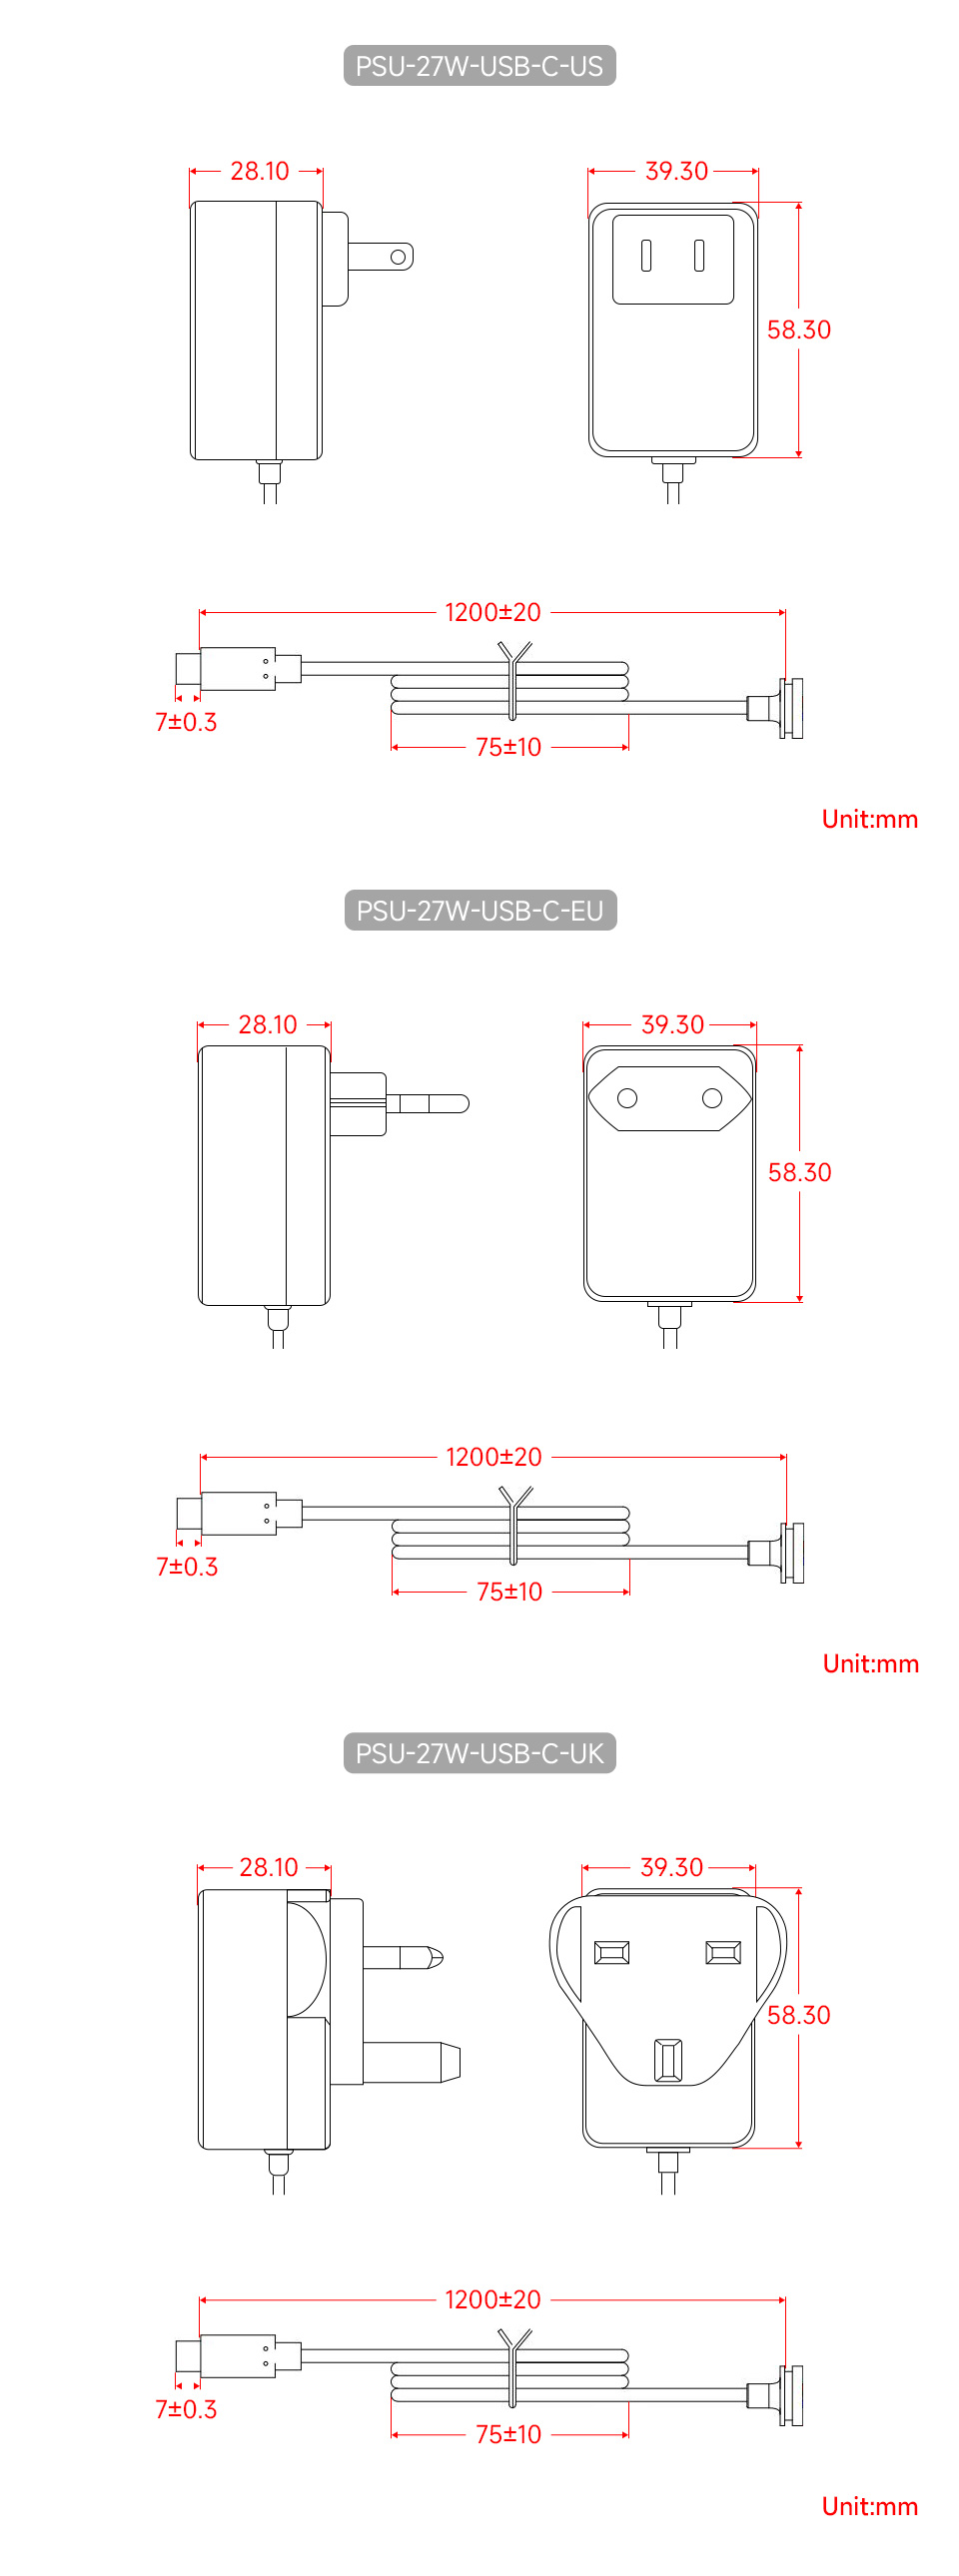 PSU-27W-USB-C-US-details-size.jpg